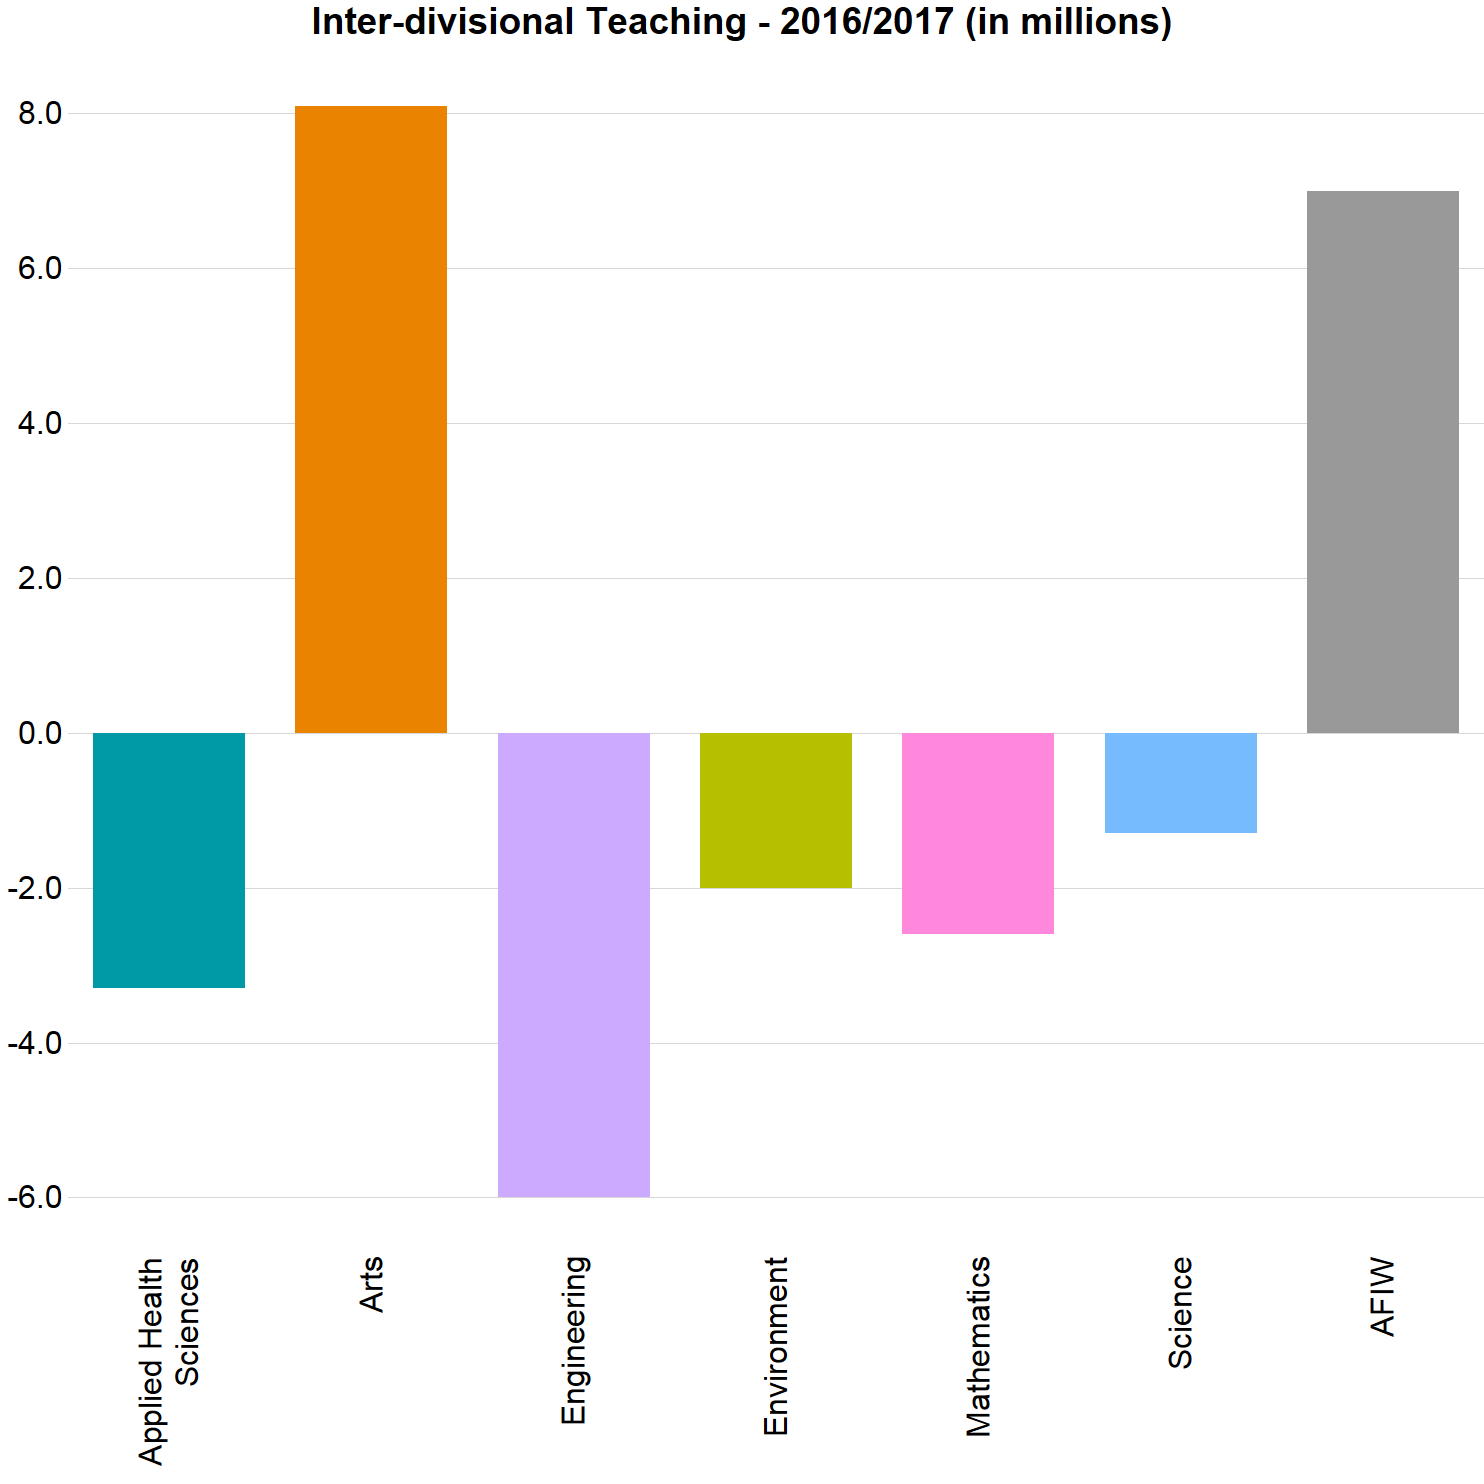 Inter-divisional Teaching bar chart